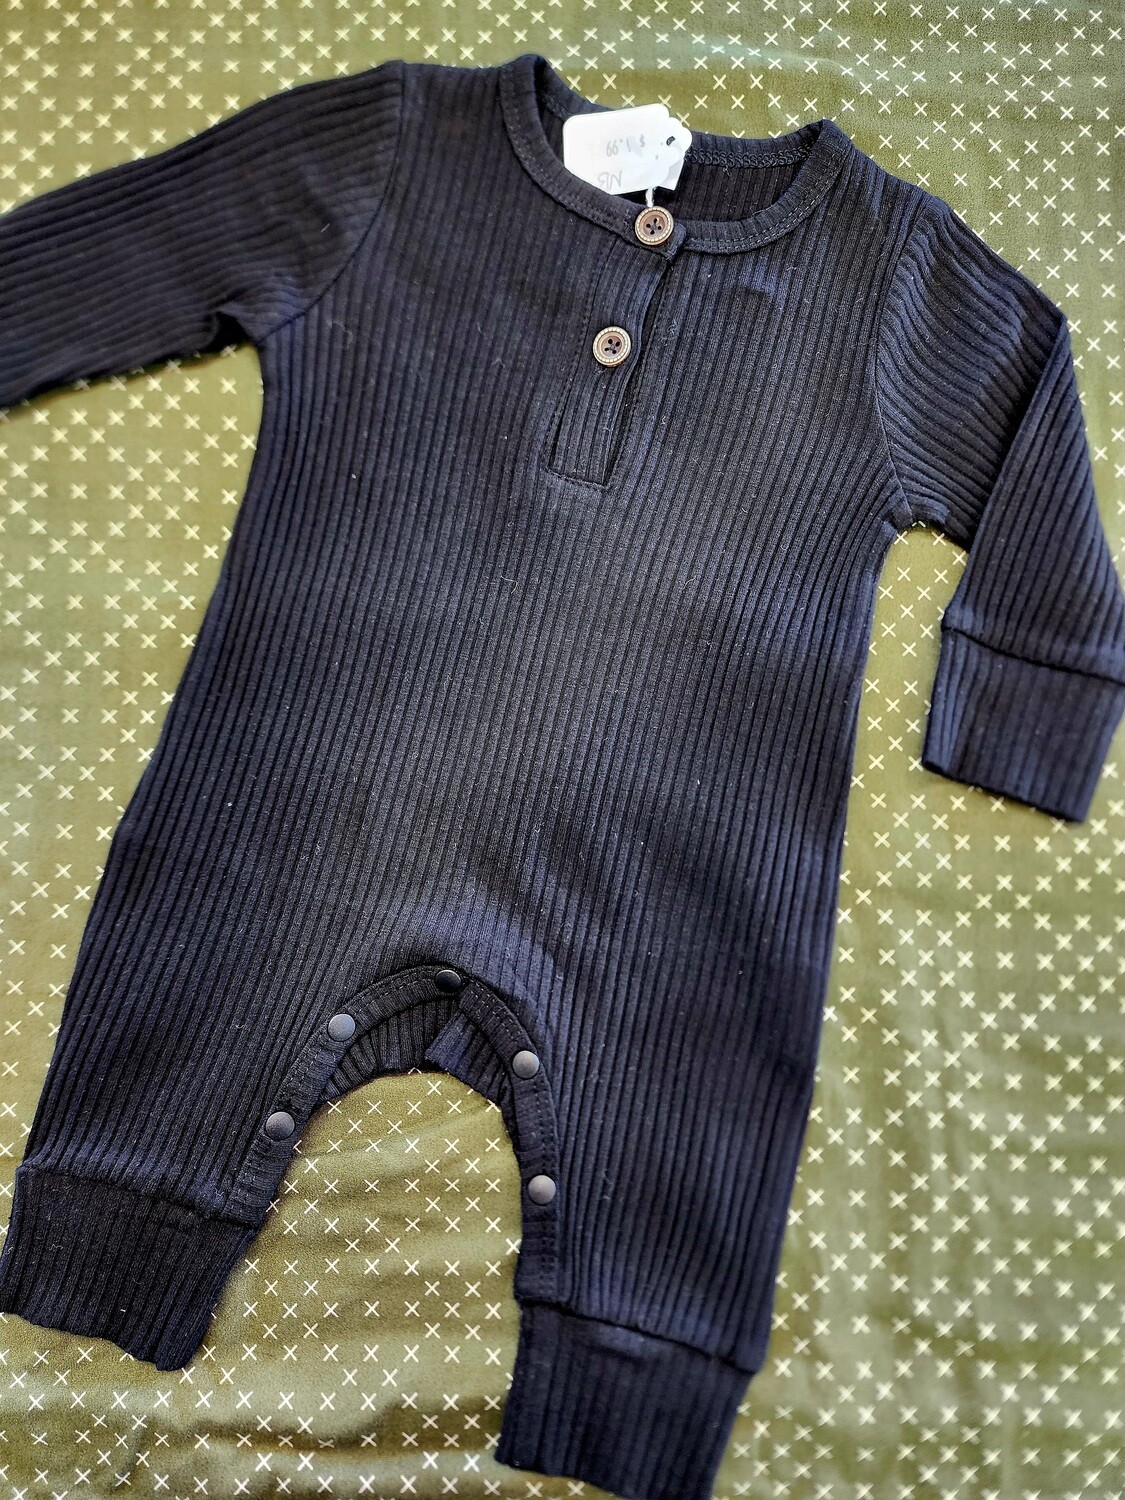 Black Baby Jumpsuit 0-3 Month